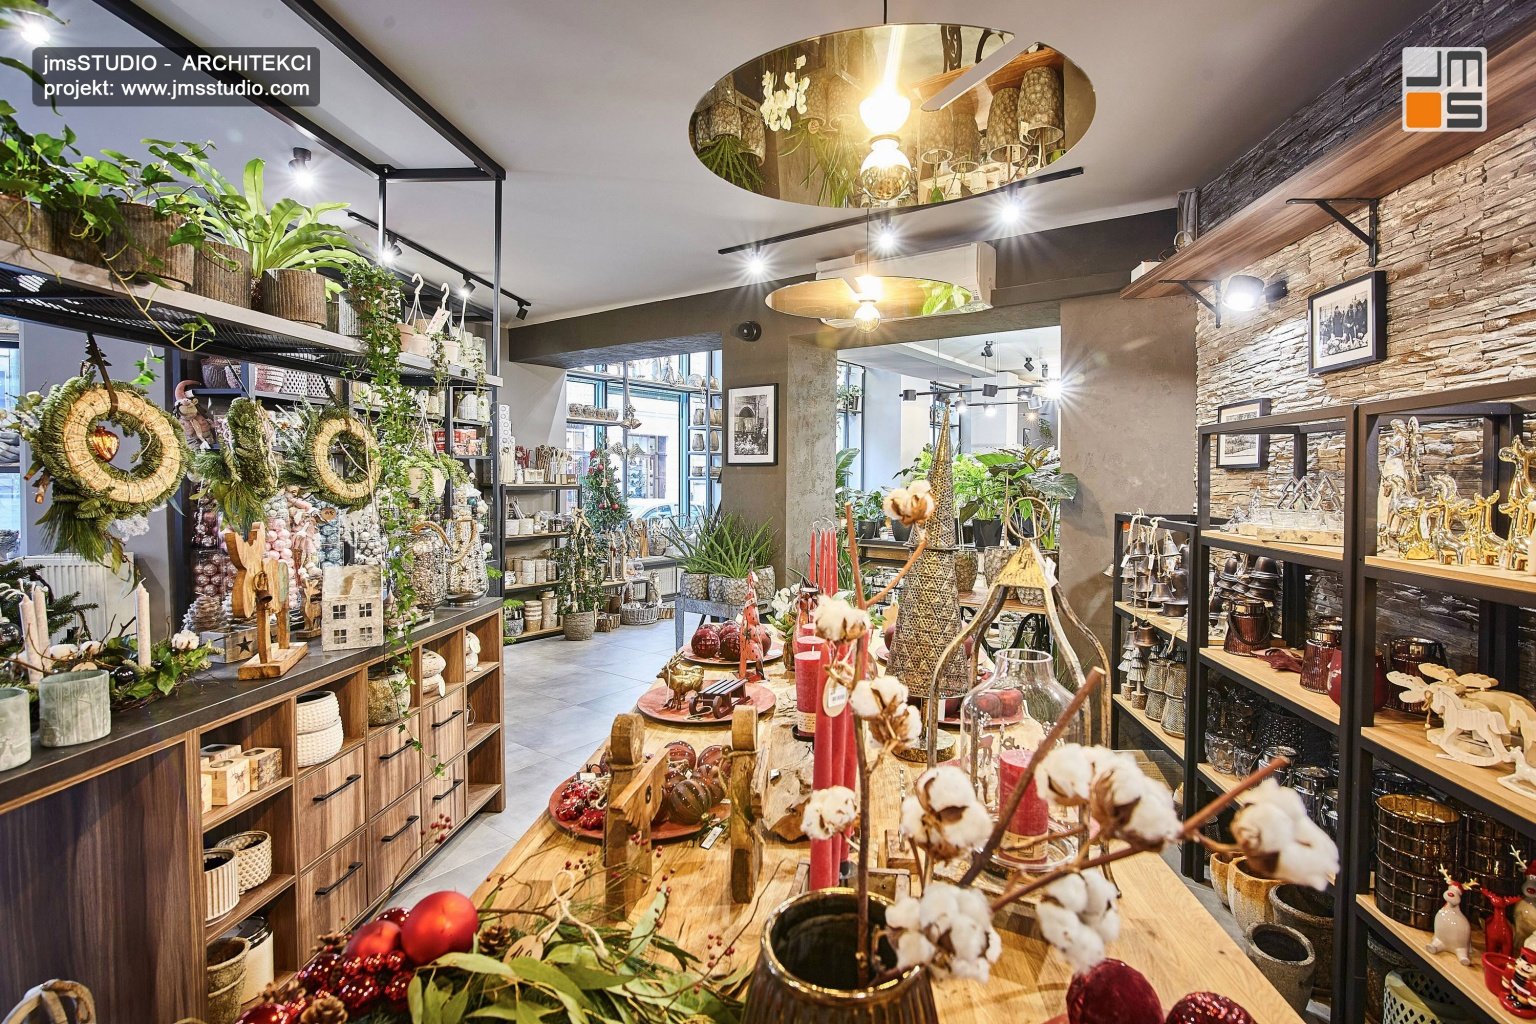 duży drewniany stół i eleganckie stalowe regały oraz złote lampy w projekt wnętrz kwiaciarni w Krakowie